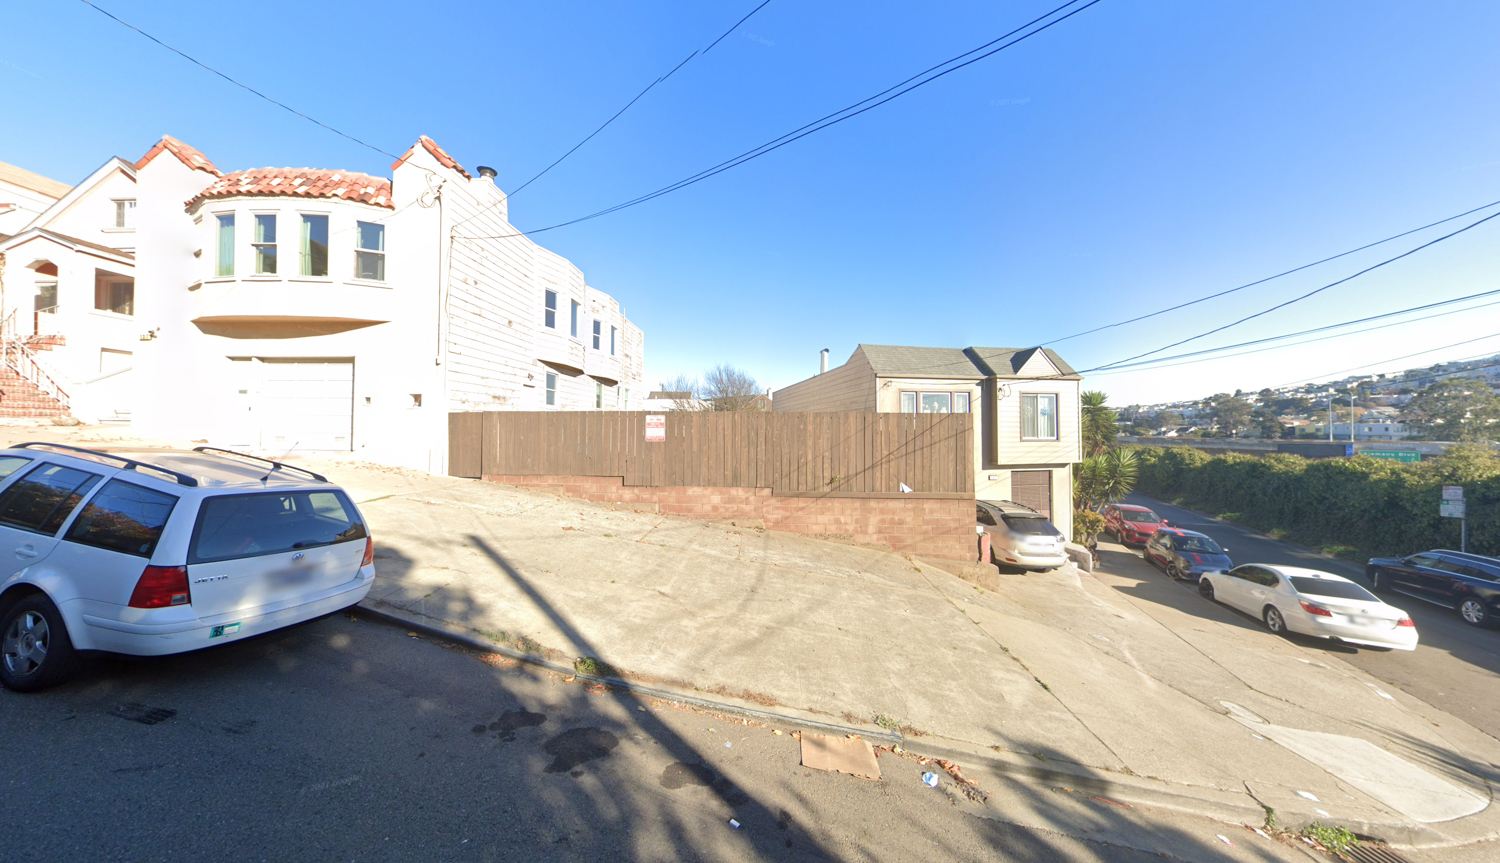 141 Milton Street, image via Google Street View